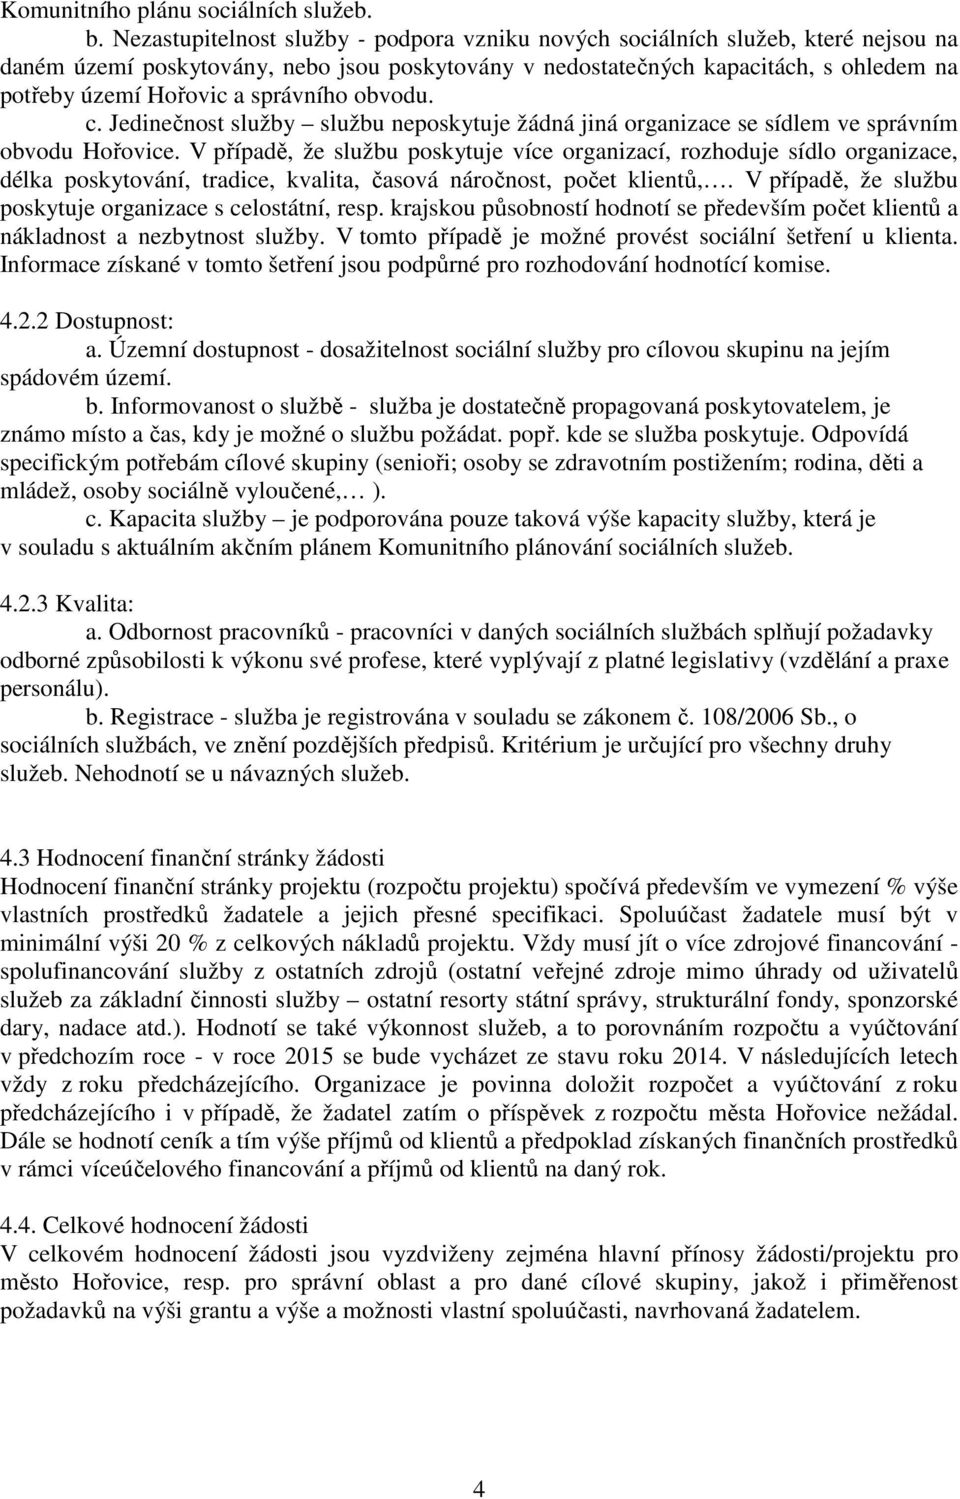 správního obvodu. c. Jedinečnost služby službu neposkytuje žádná jiná organizace se sídlem ve správním obvodu Hořovice.